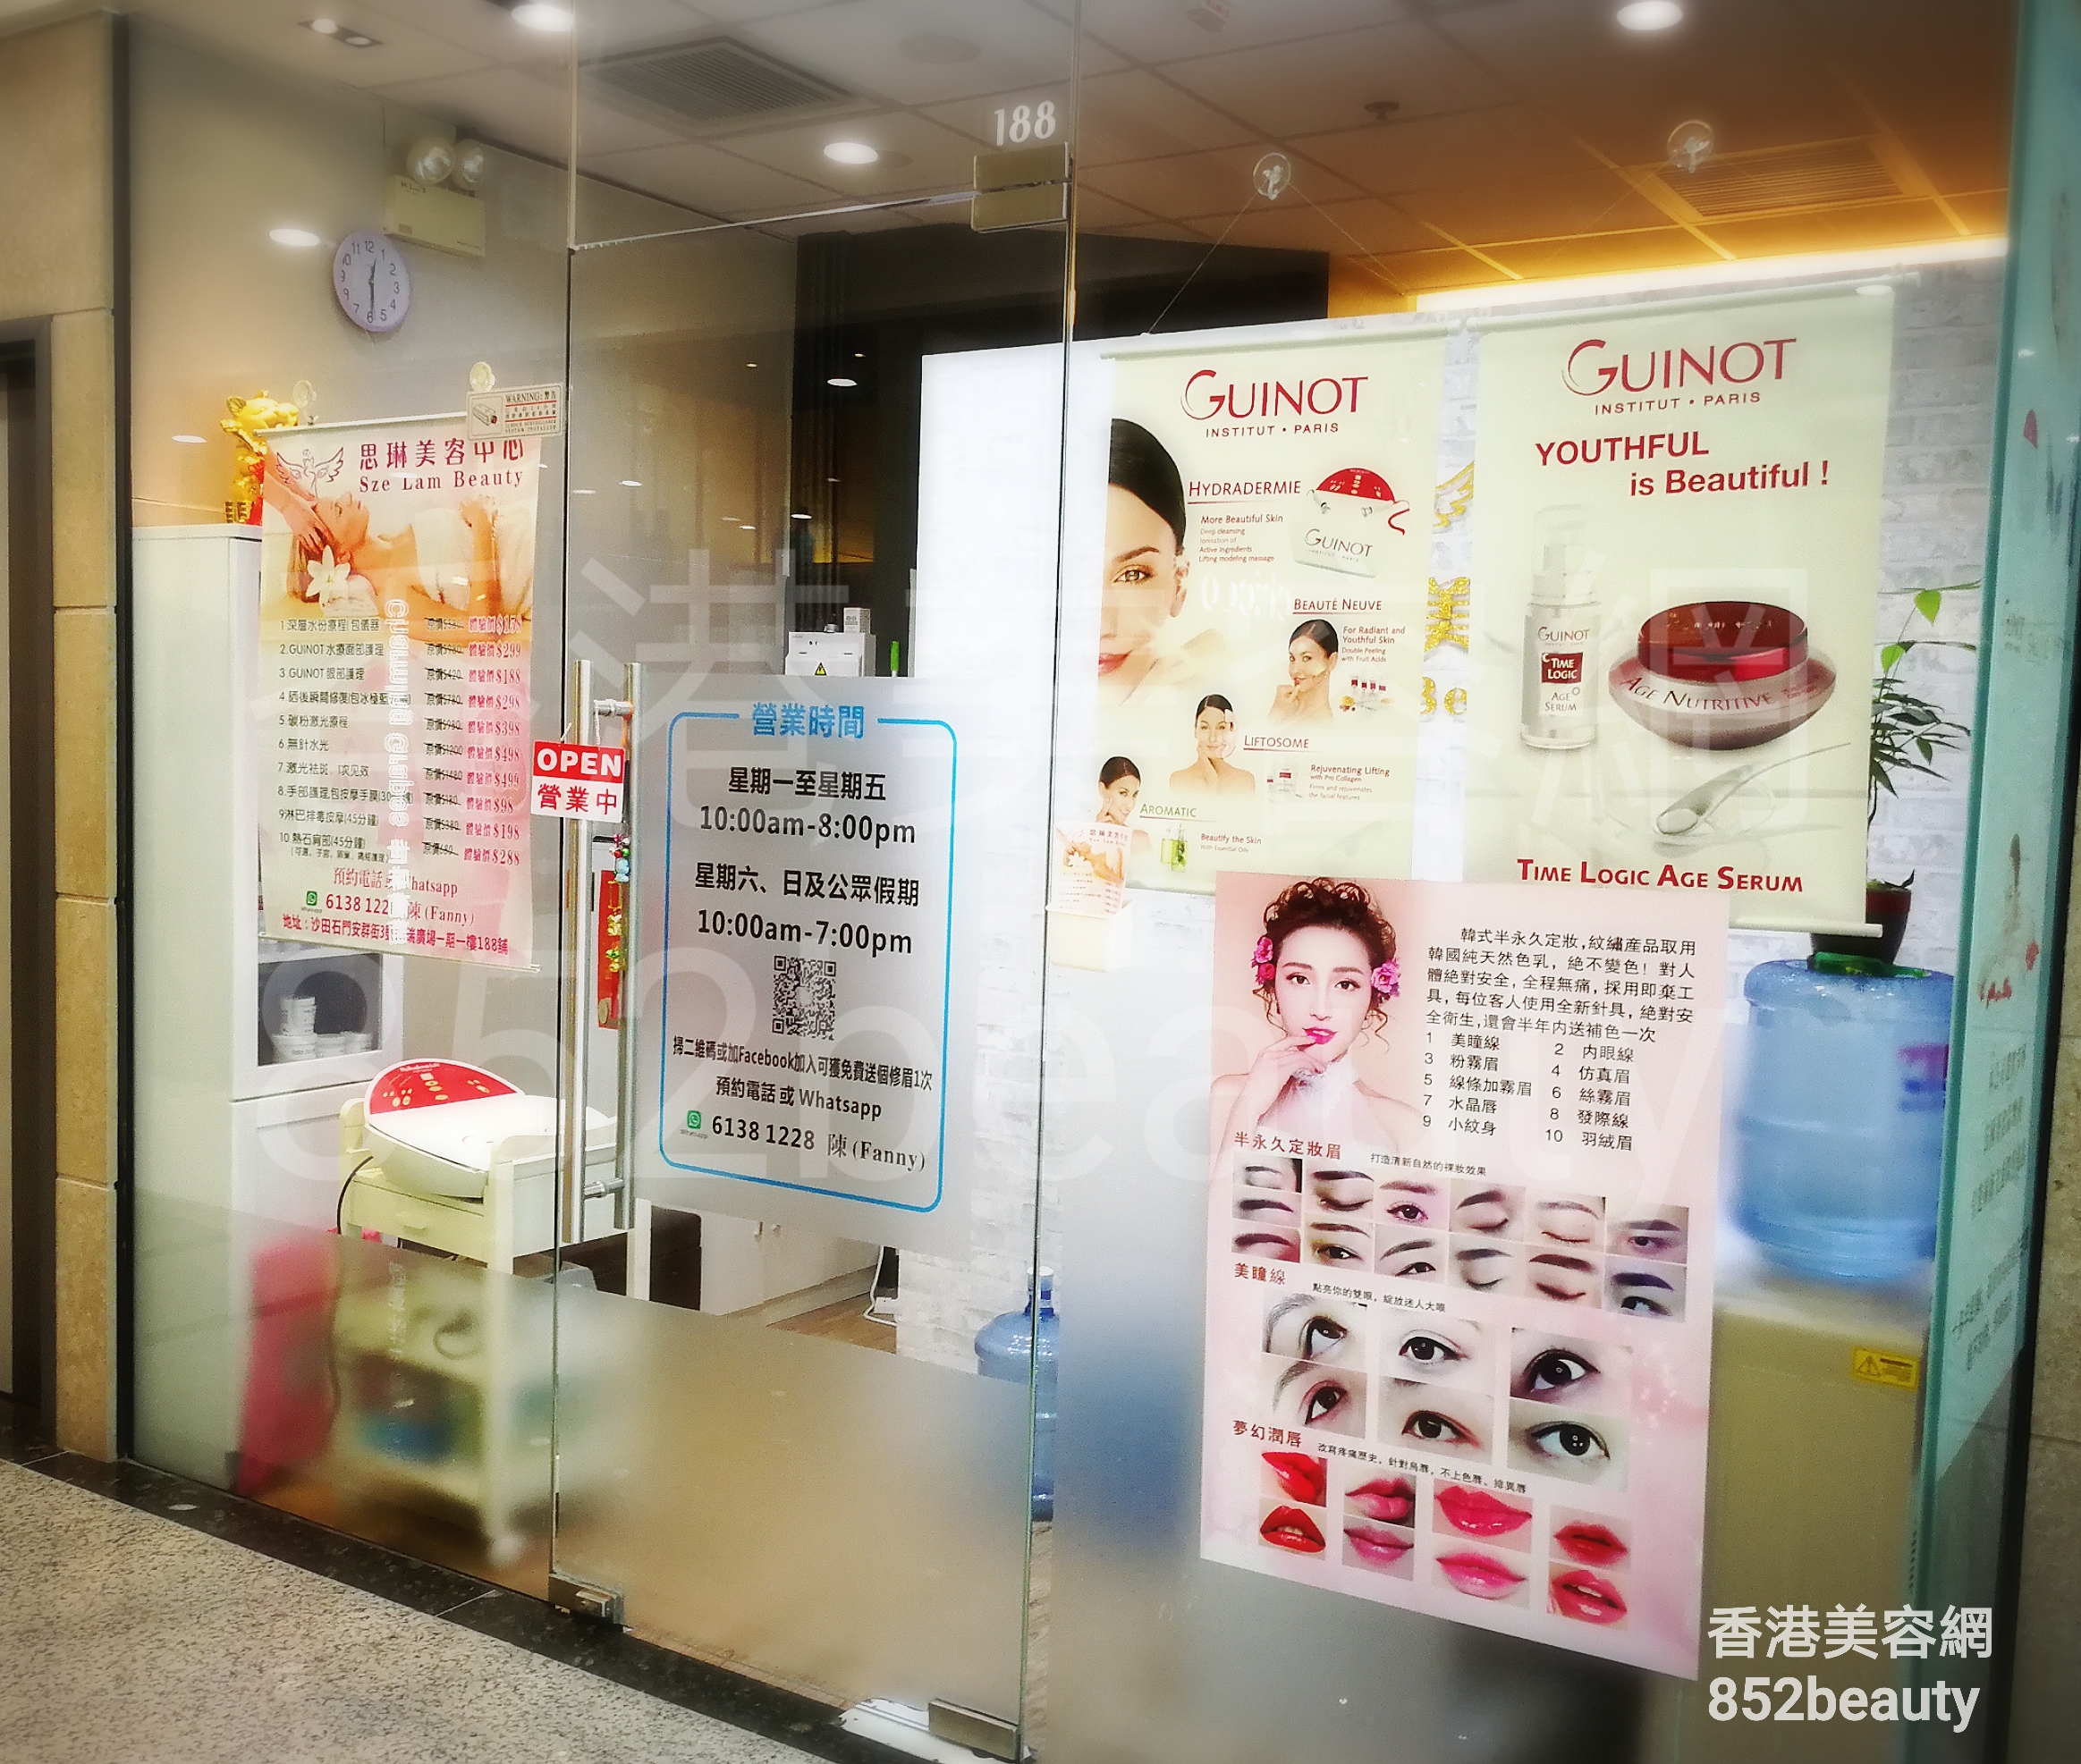 香港美容網 Hong Kong Beauty Salon 美容院 / 美容師: 思琳美容中心